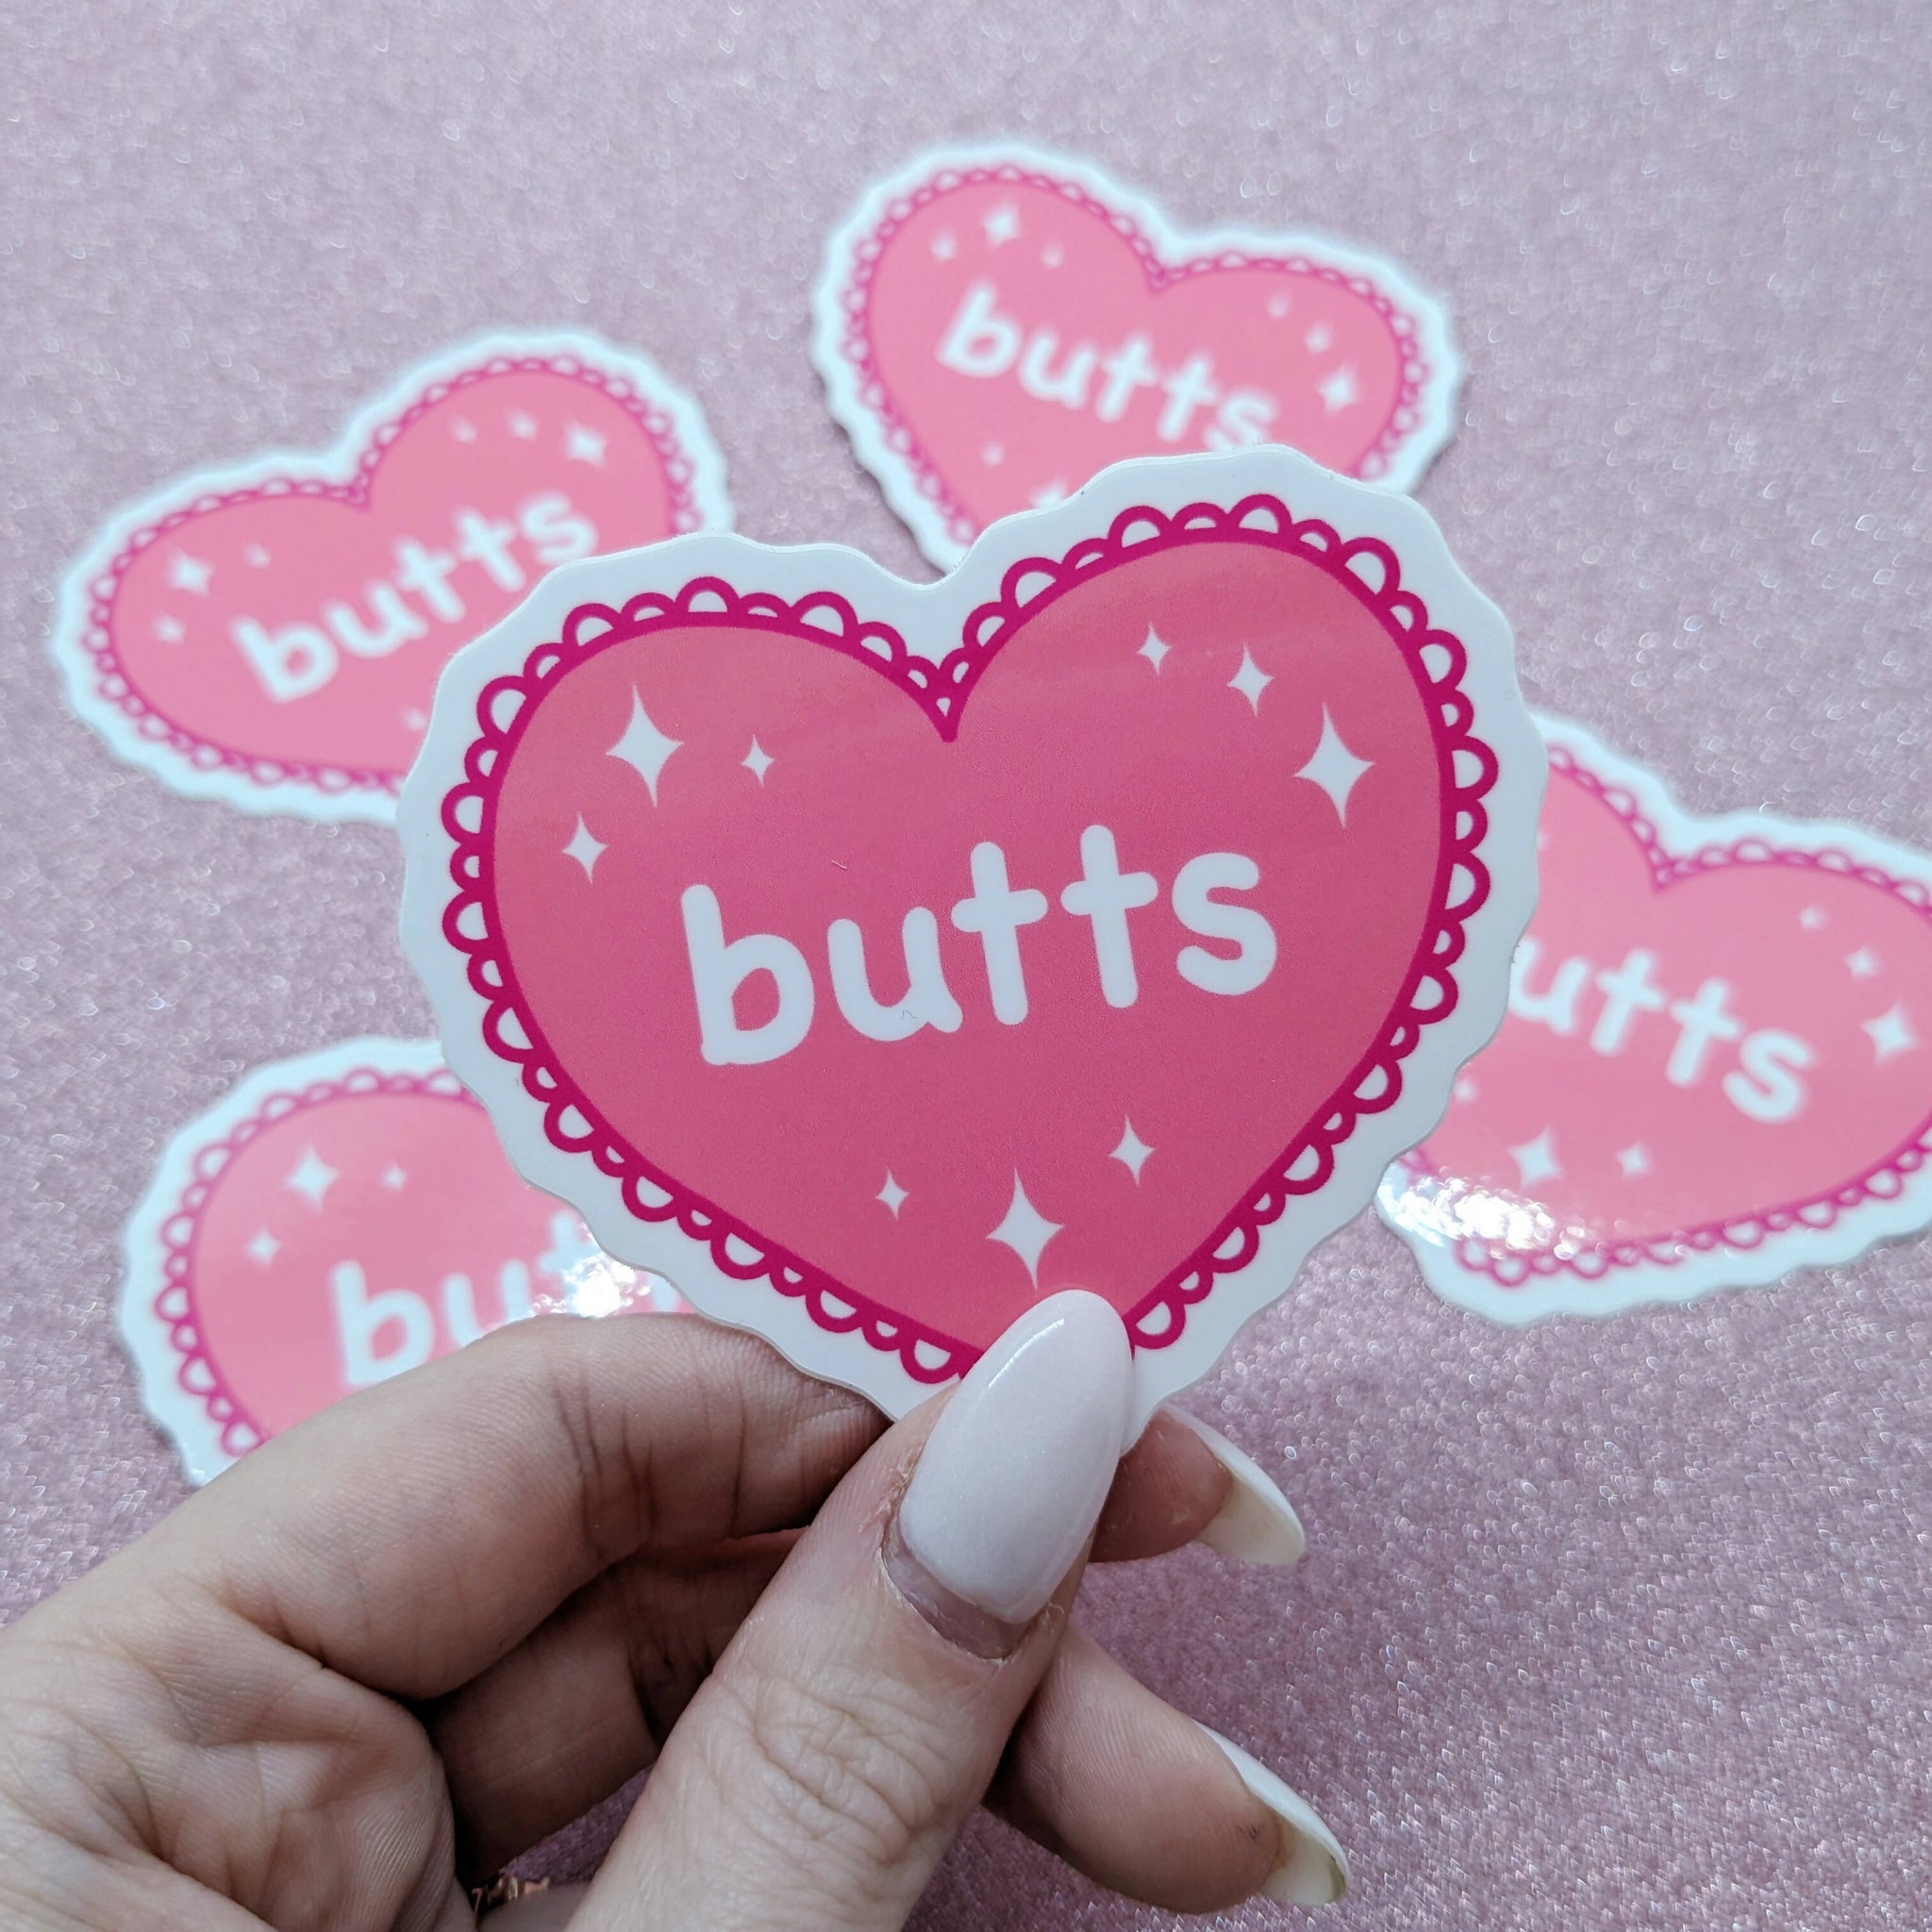 Butts Sticker